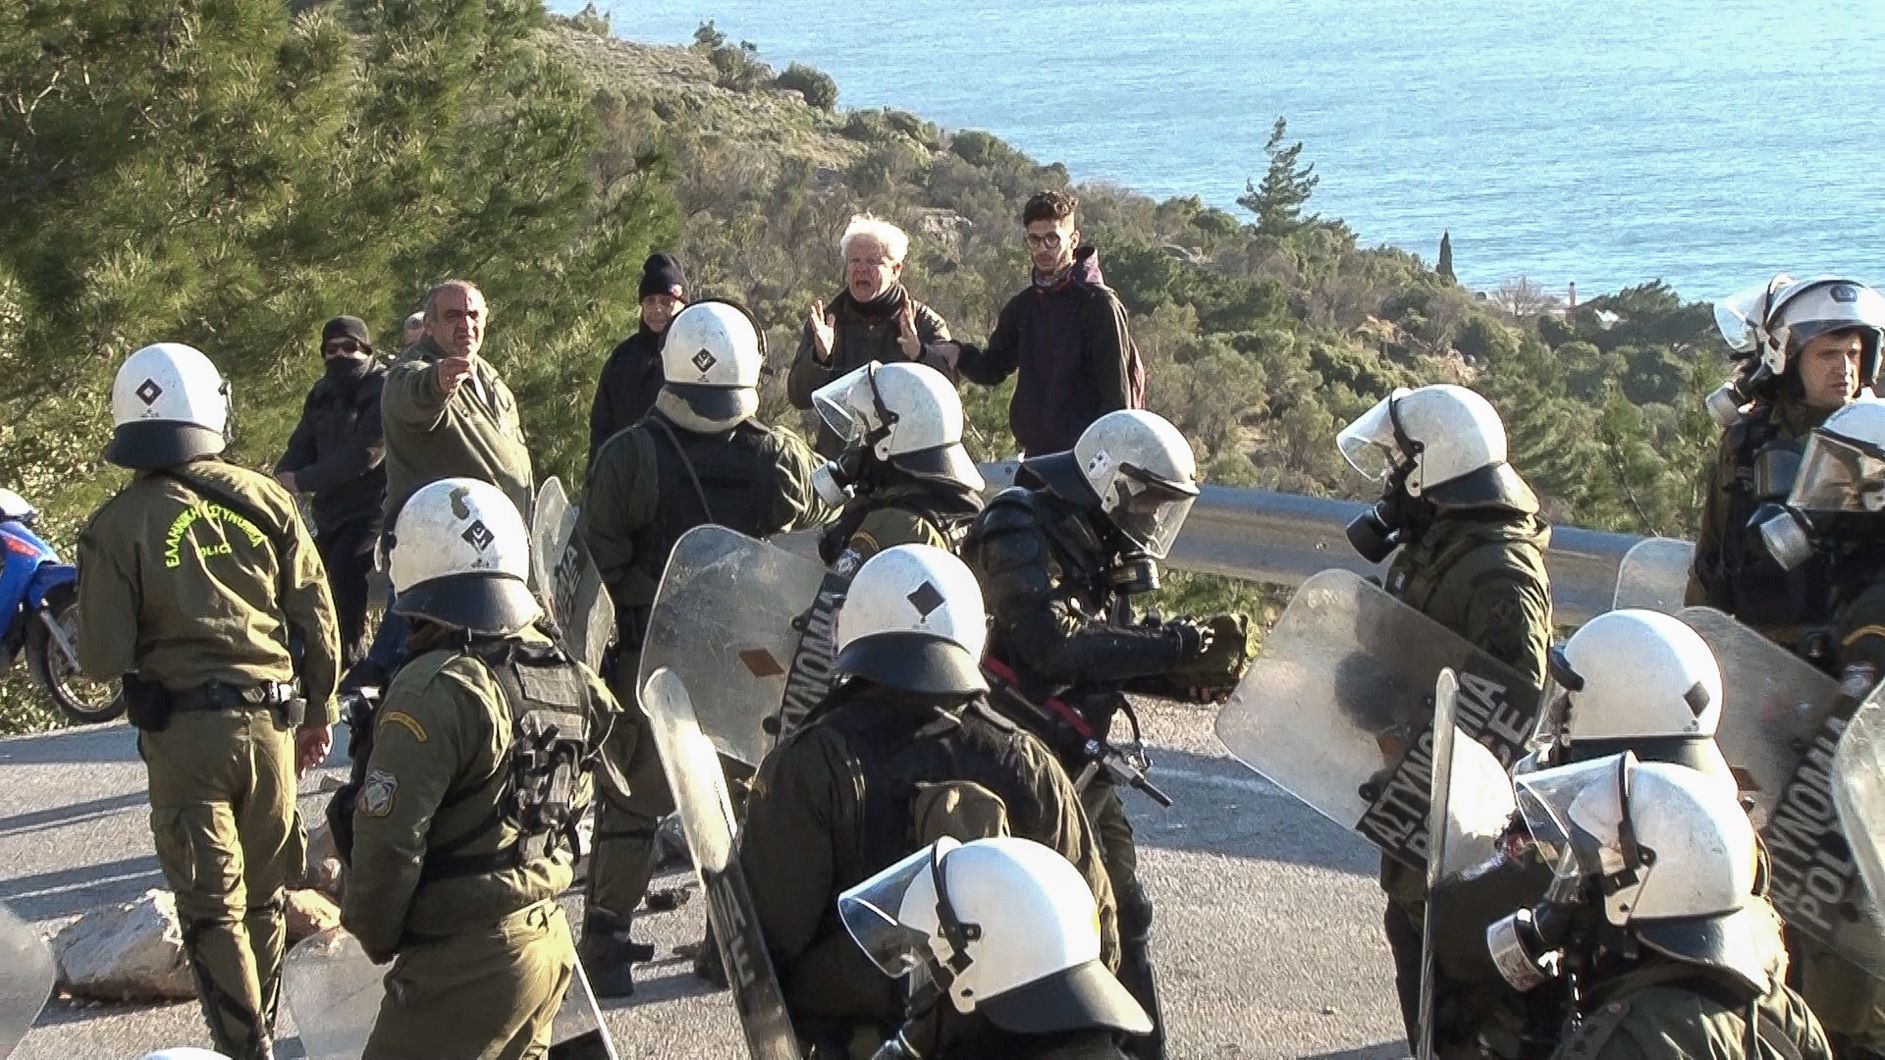 Χίος: Χαμός! Οργισμένοι κάτοικοι μπούκαραν στο ξενοδοχείο των ΜΑΤ και τους ξυλοκόπησαν